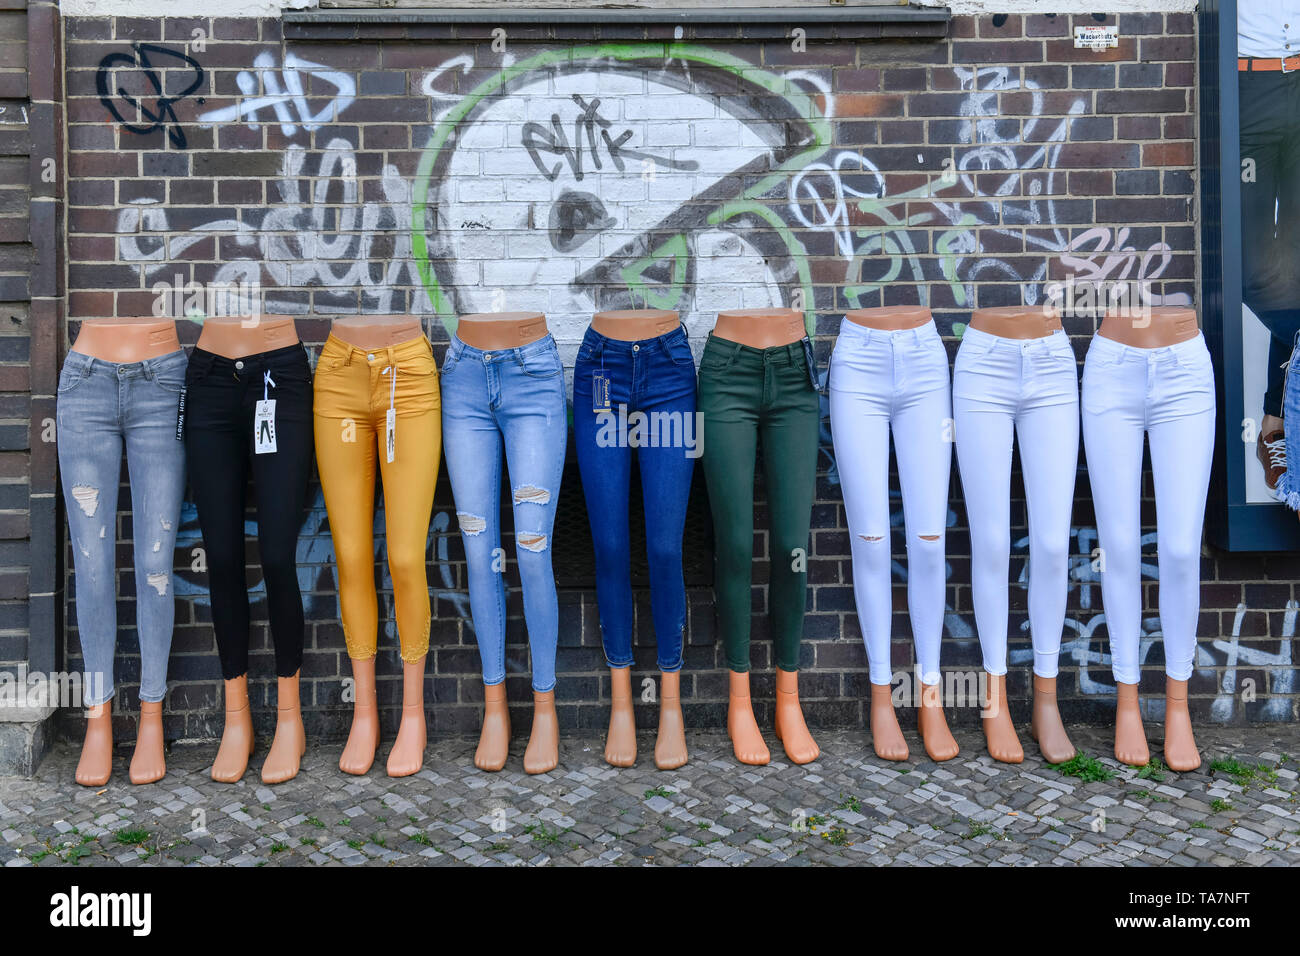 Jeans-shop, Wilhelmstraße, Wilhelm's Town, Spandau, Berlin, Deutschland,  Jeansshop, Wilhelmstraße, Wilhelmstadt, Deutschland Stockfotografie - Alamy